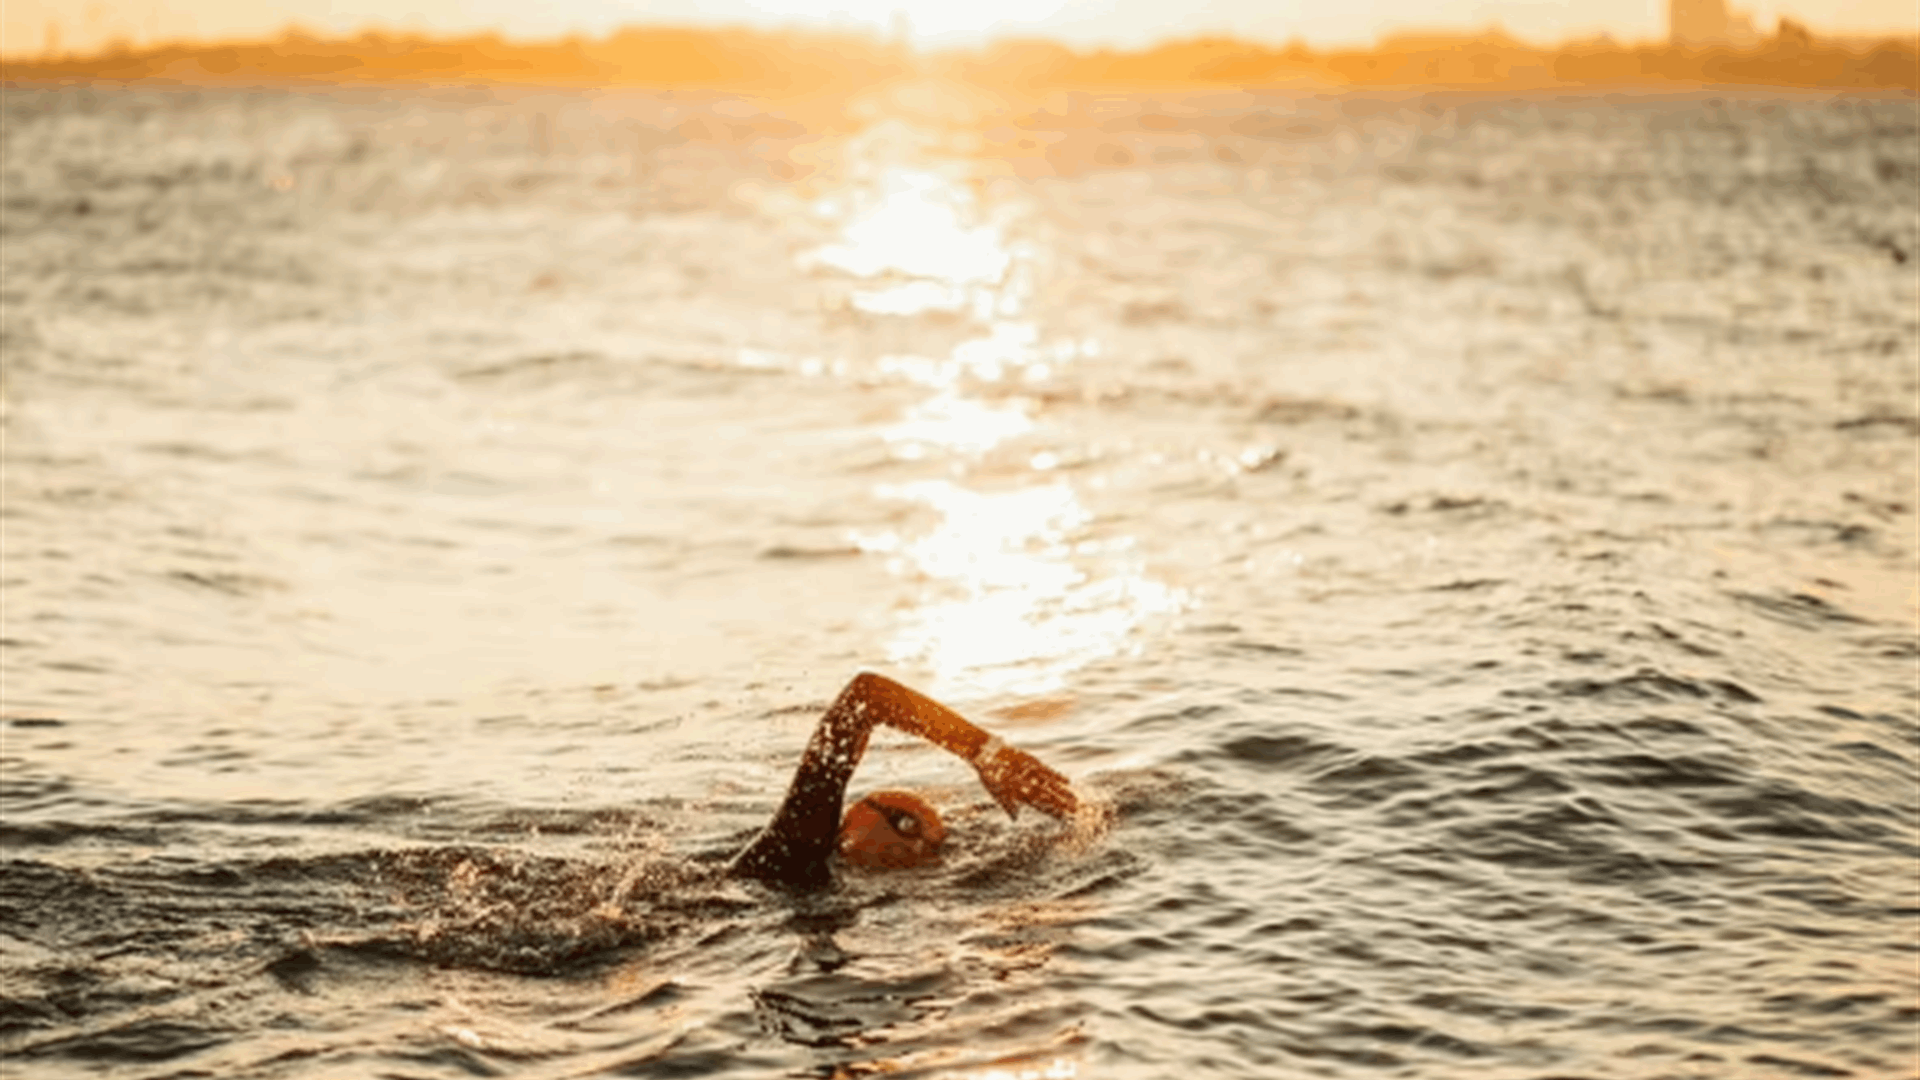 إلى النساء... السباحة في الماء البارد قد تخفف من هذه الأعراض الصحية المزعجة 